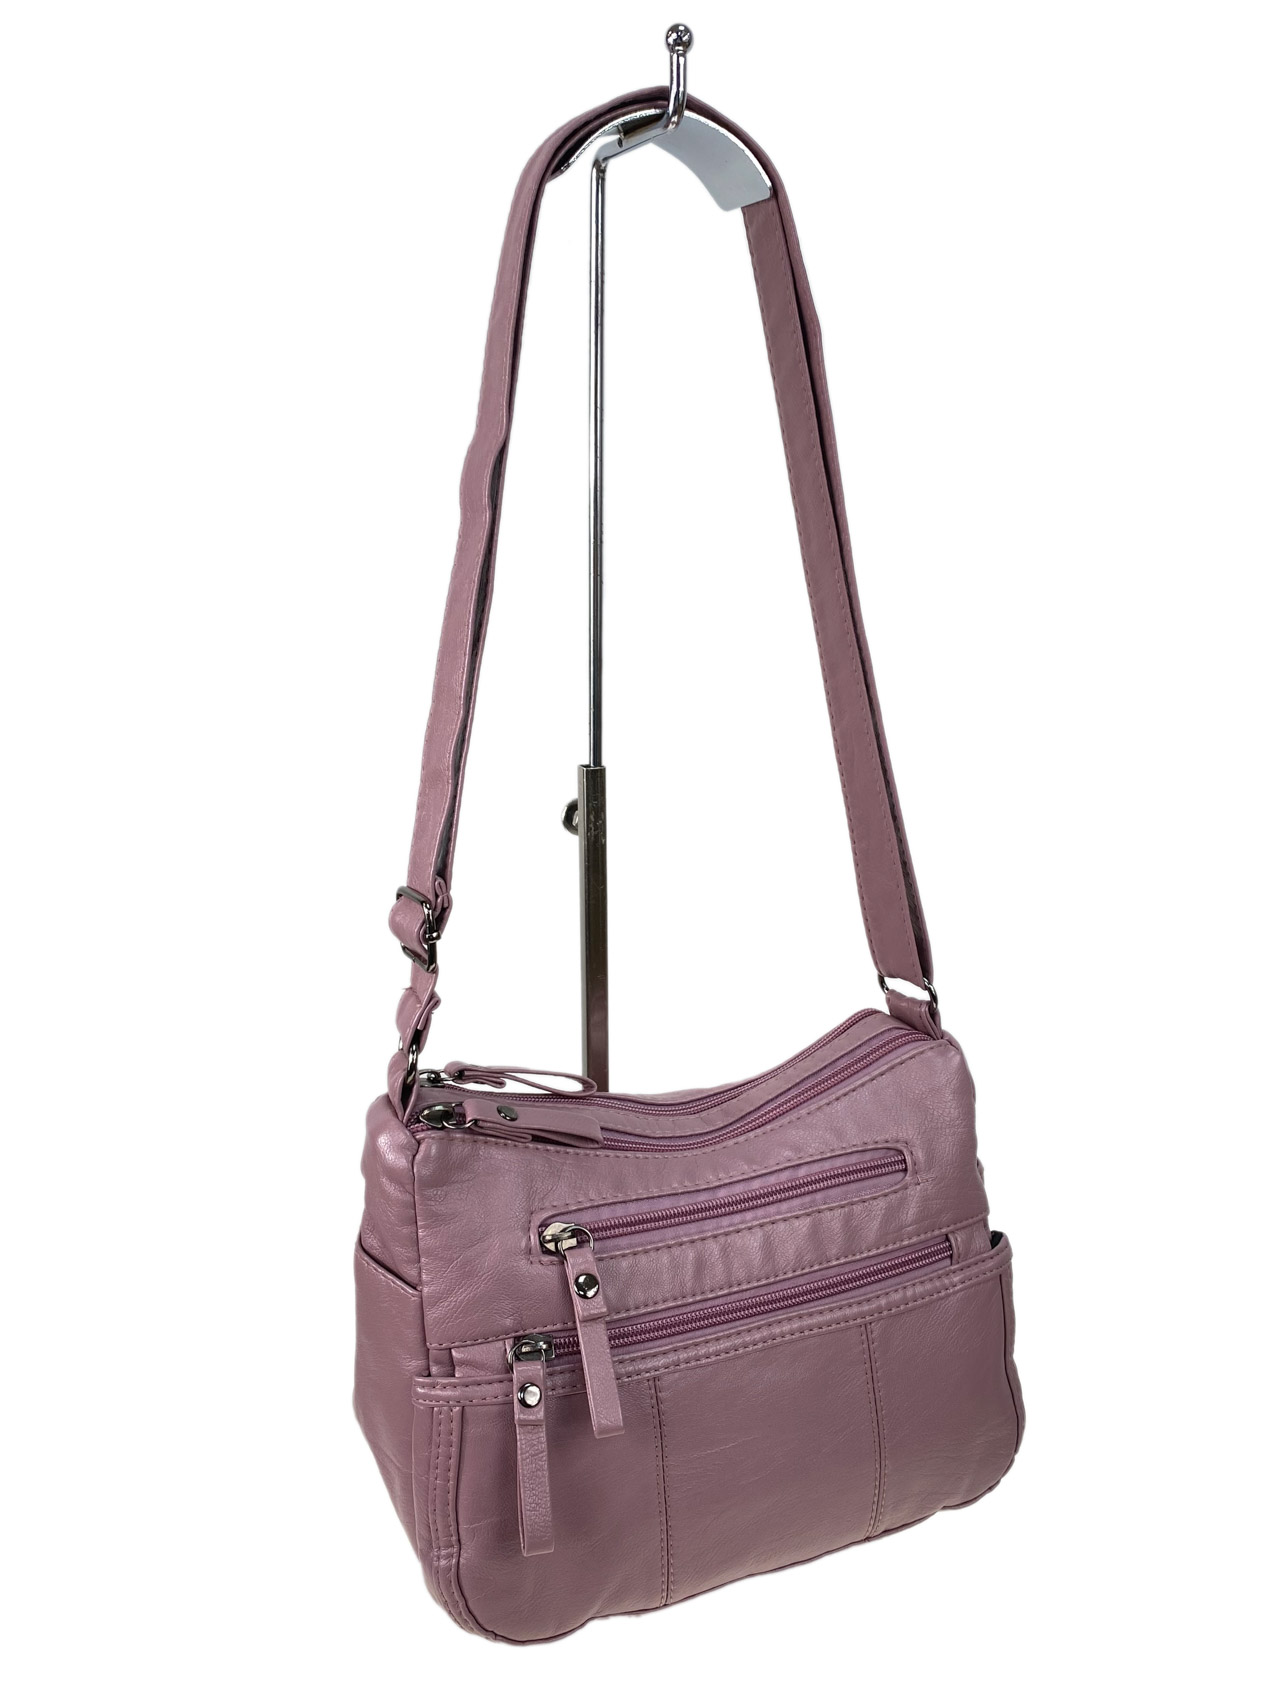 Женская классическая сумка из искусственной кожи, цвет розовый